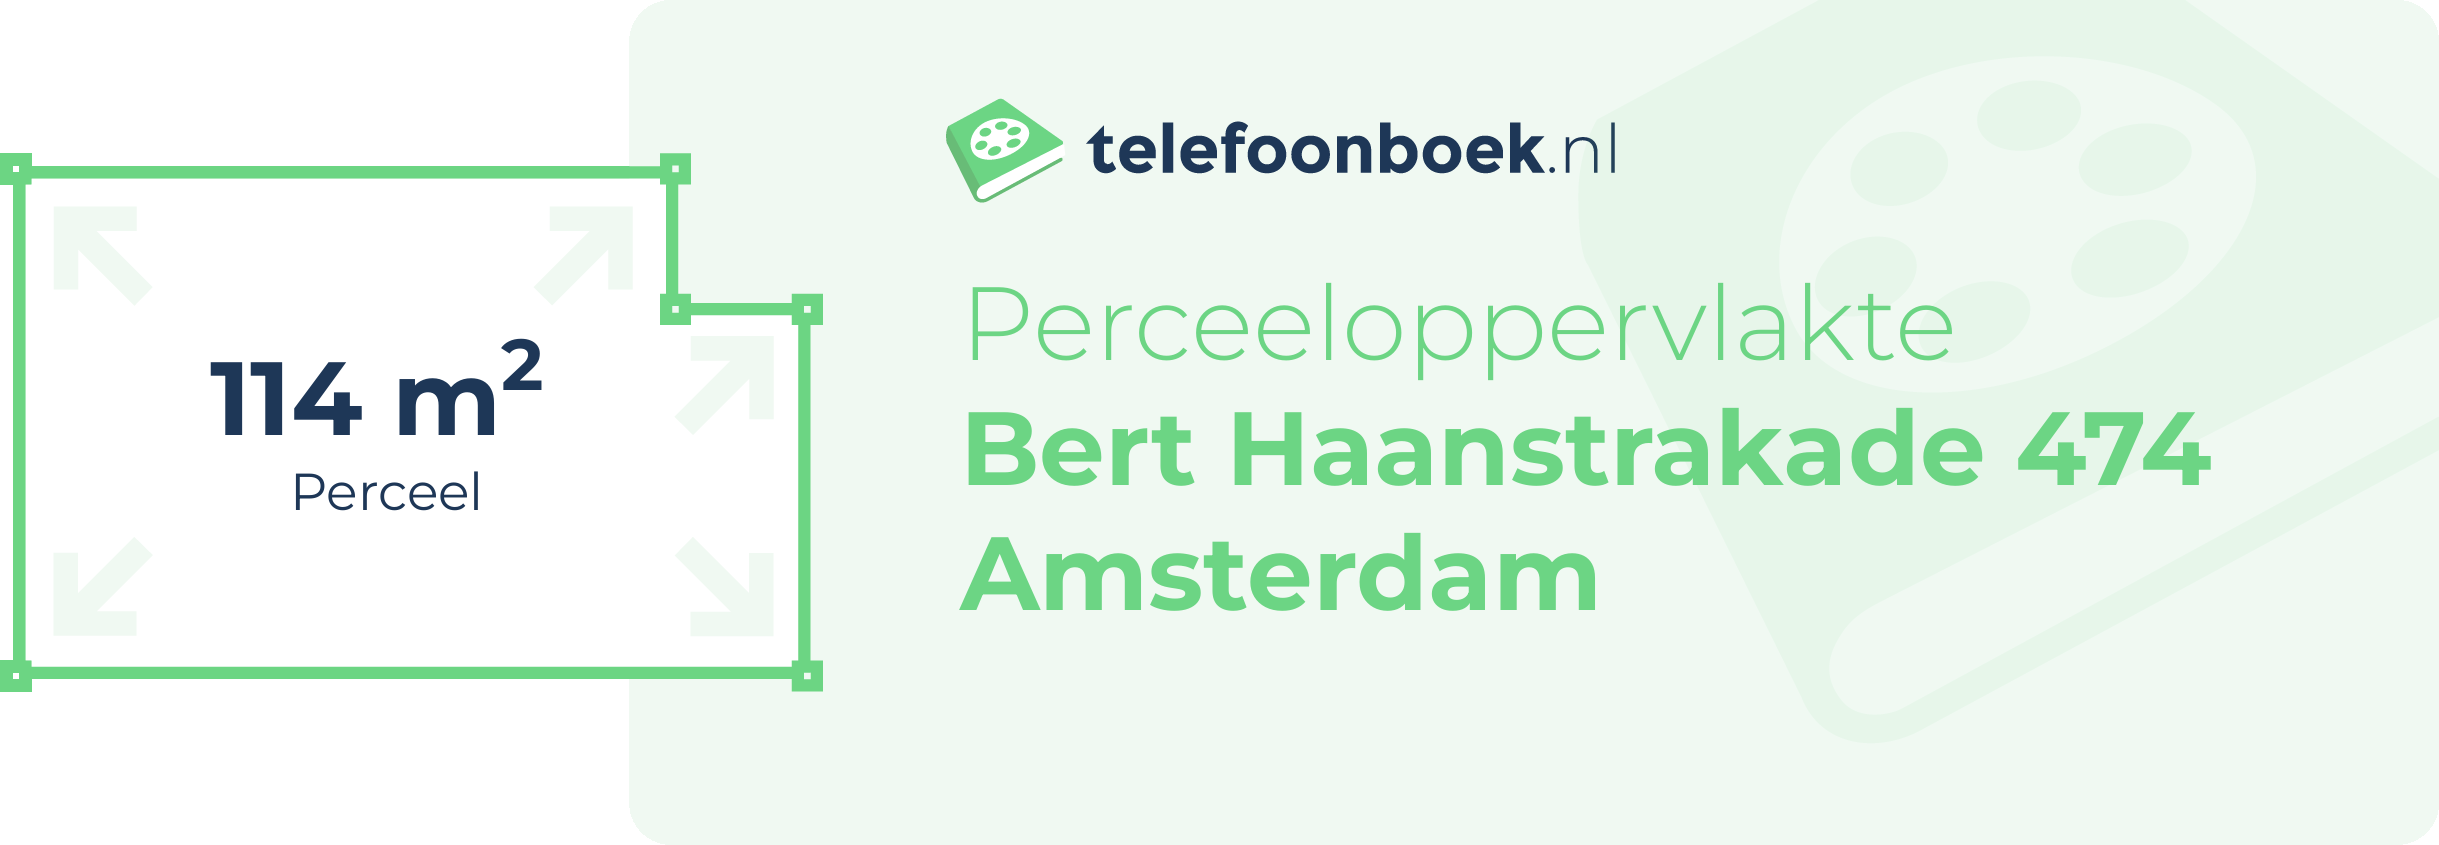 Perceeloppervlakte Bert Haanstrakade 474 Amsterdam